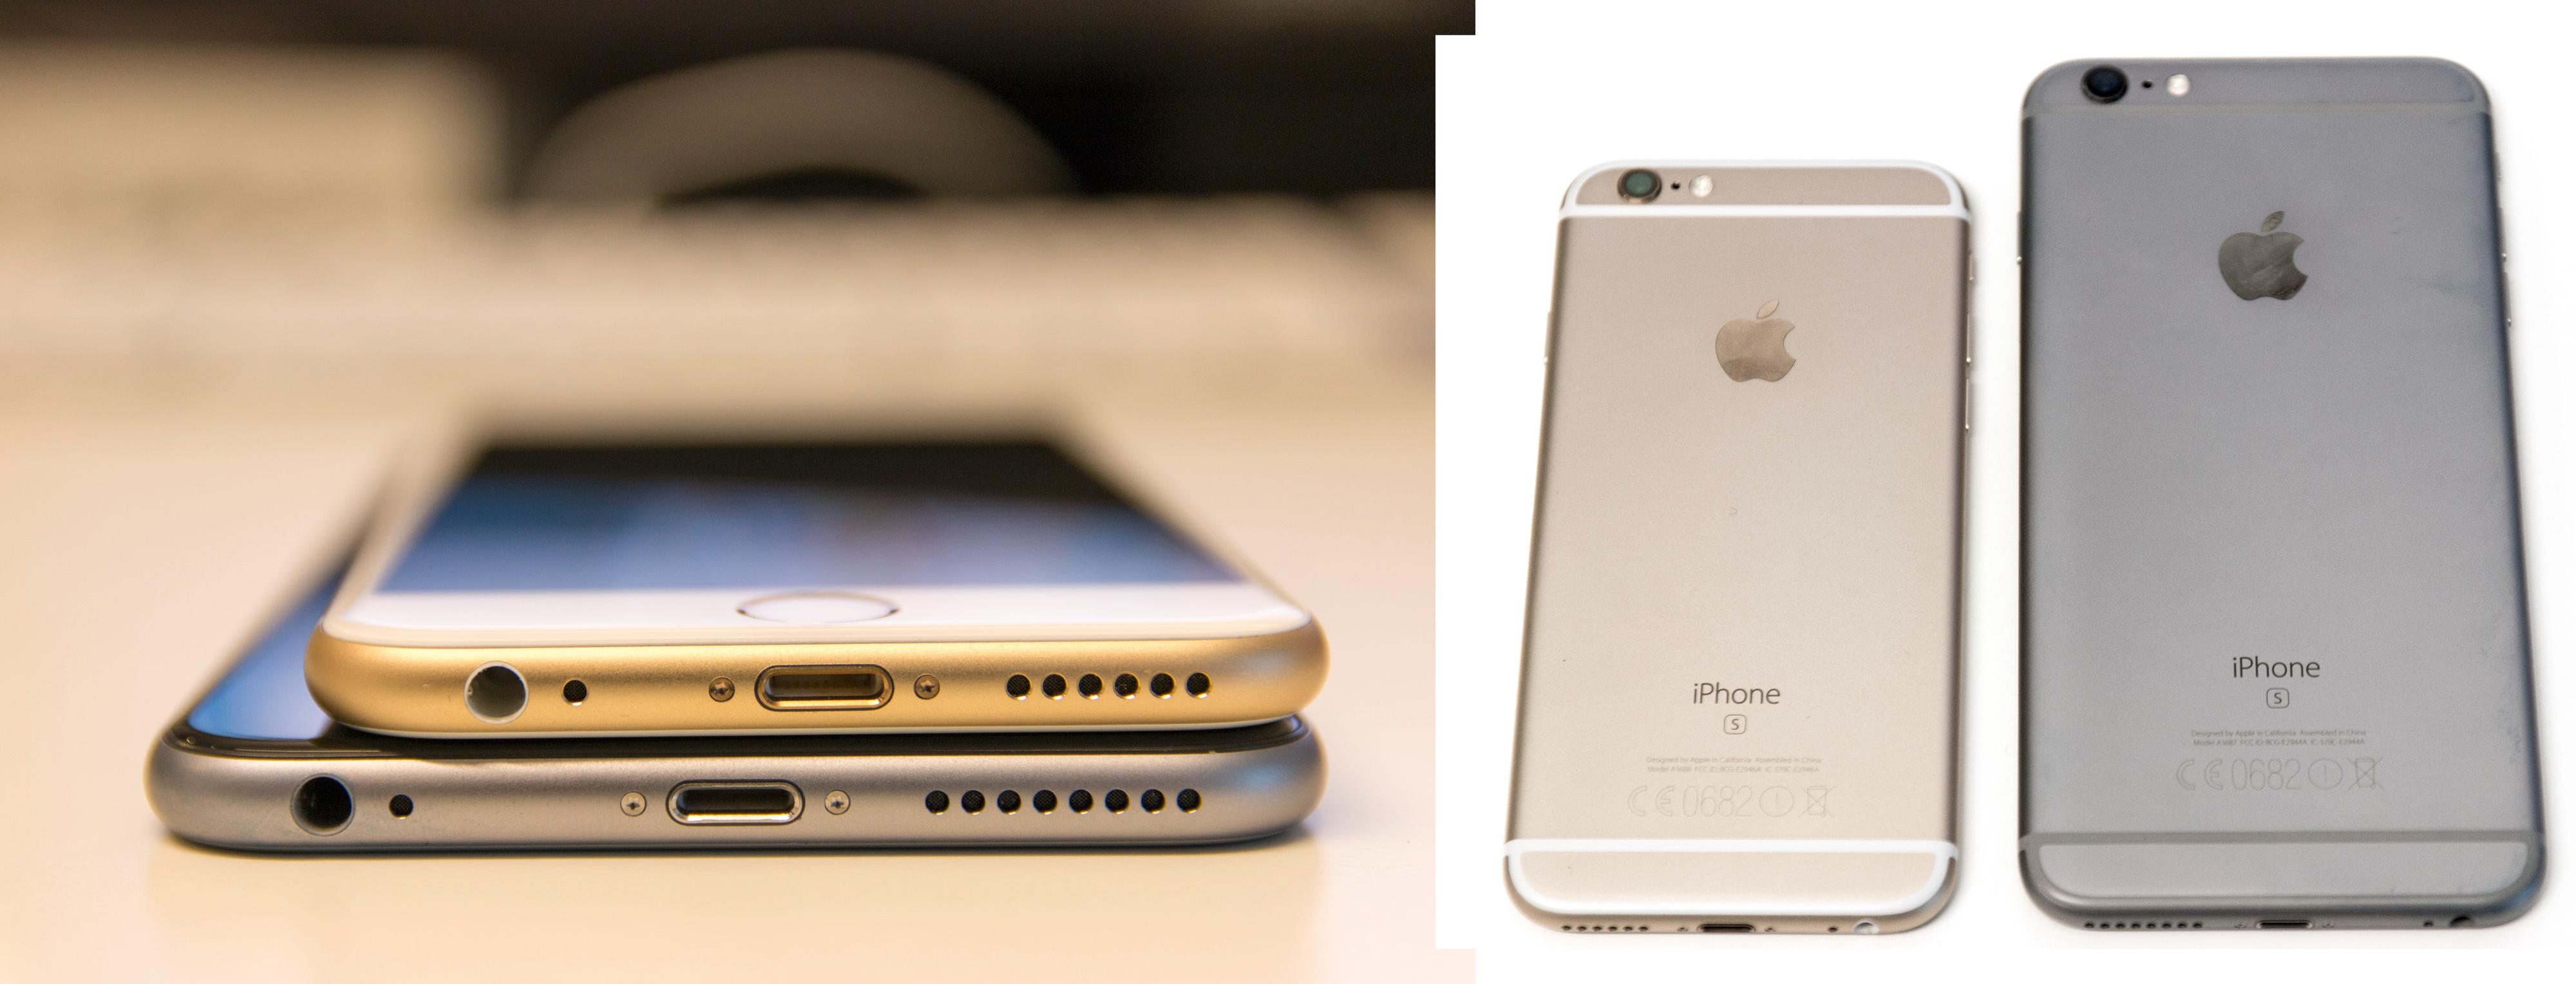 iPhone 6S Plus og den vanlige iPhone 6S. Plus-modellen er vesentlig større. Foto: Niklas Plikk, Tek.no